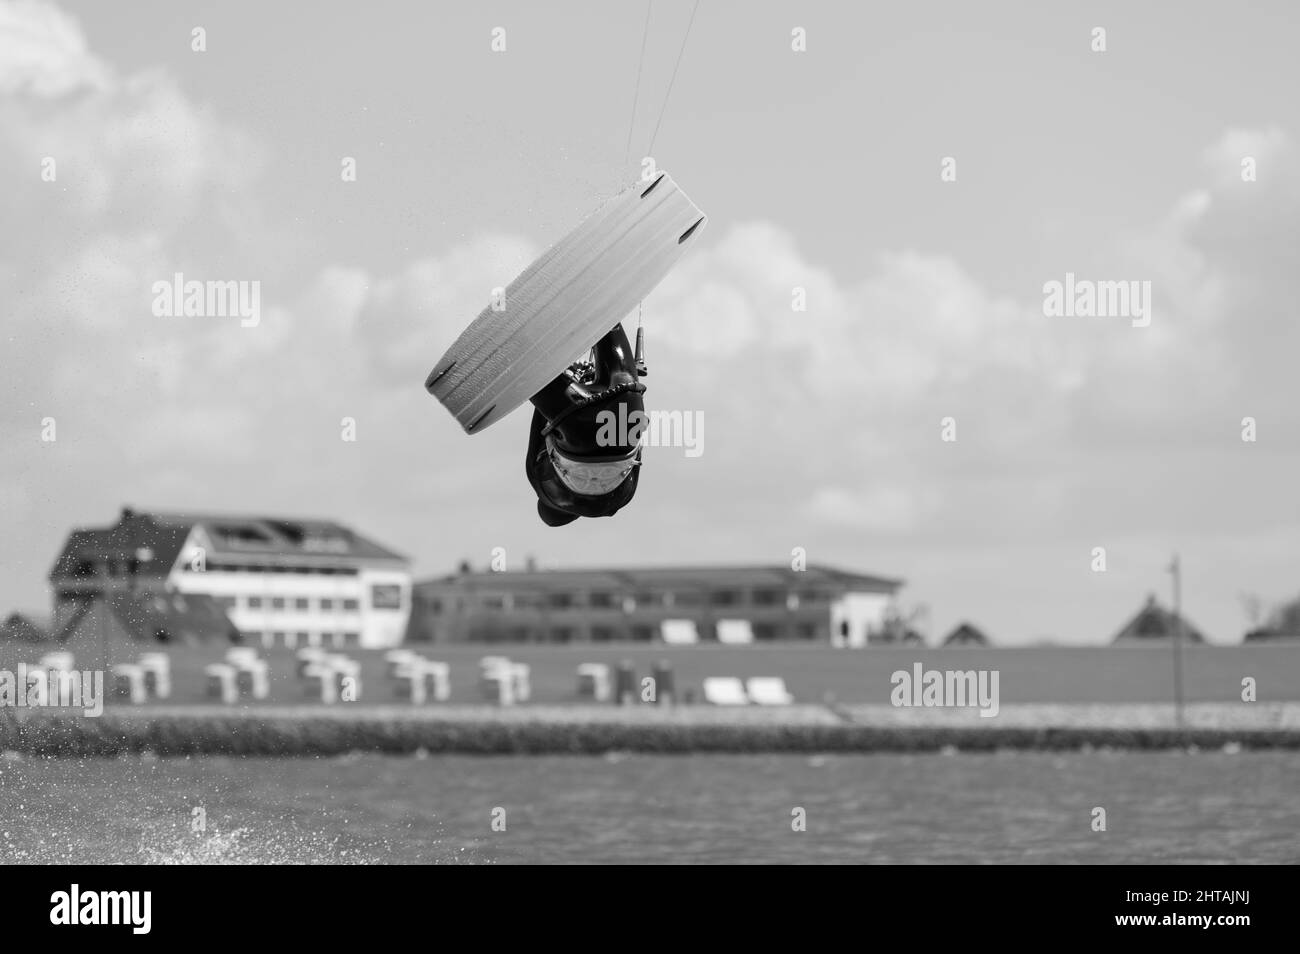 Prise de vue en niveaux de gris d'un kite surfeur contre un ciel nuageux Banque D'Images